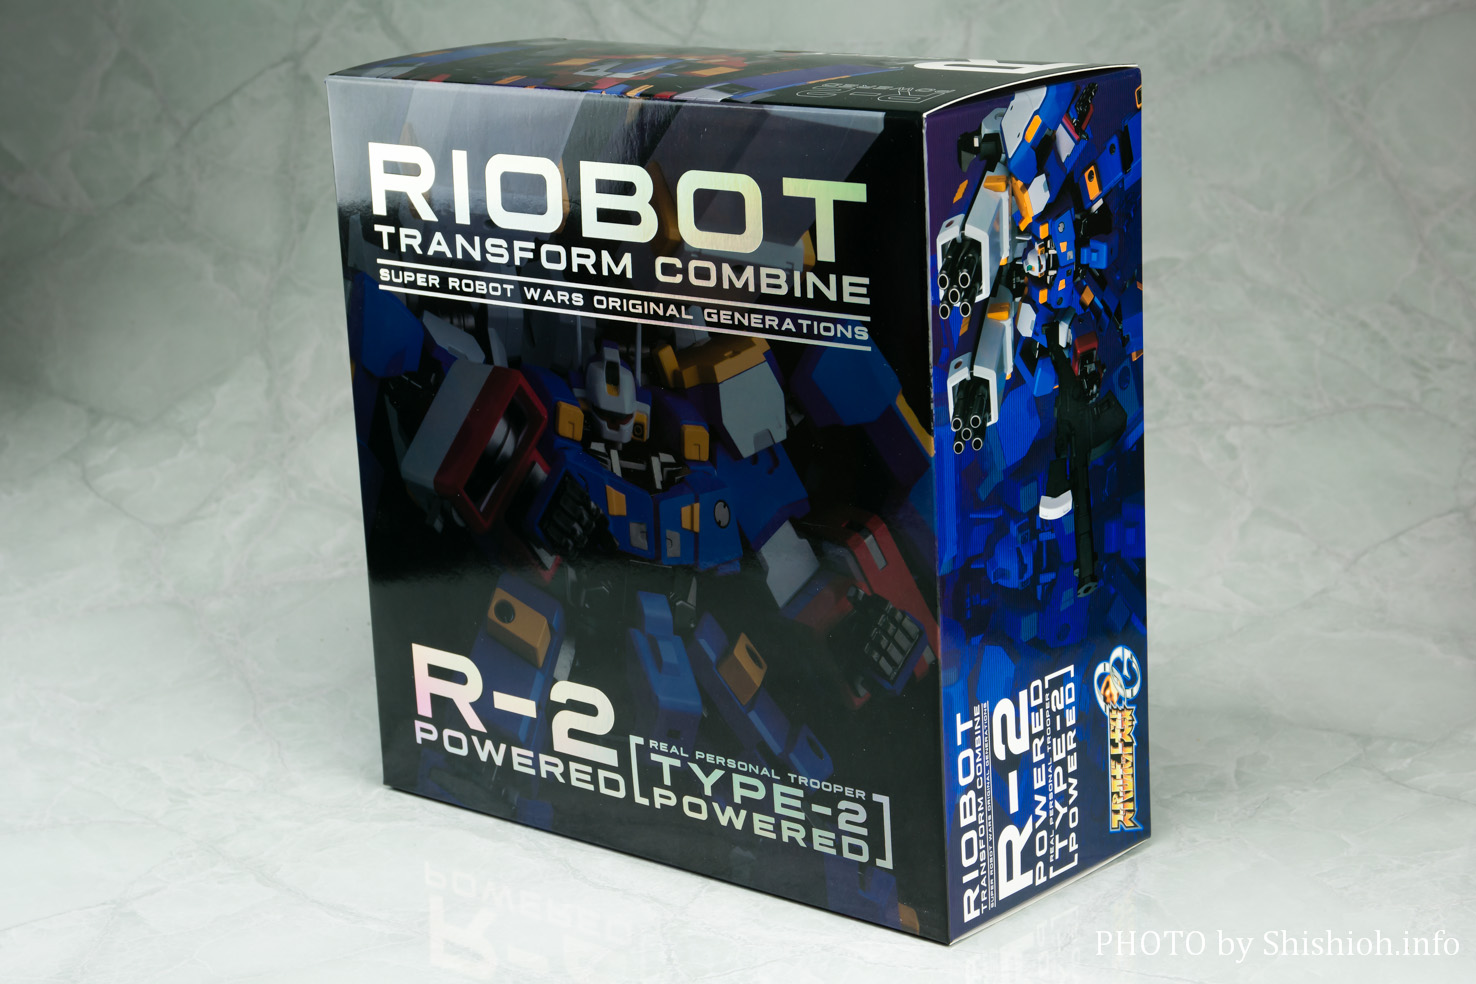 RIOBOT 変形合体 R-2パワード